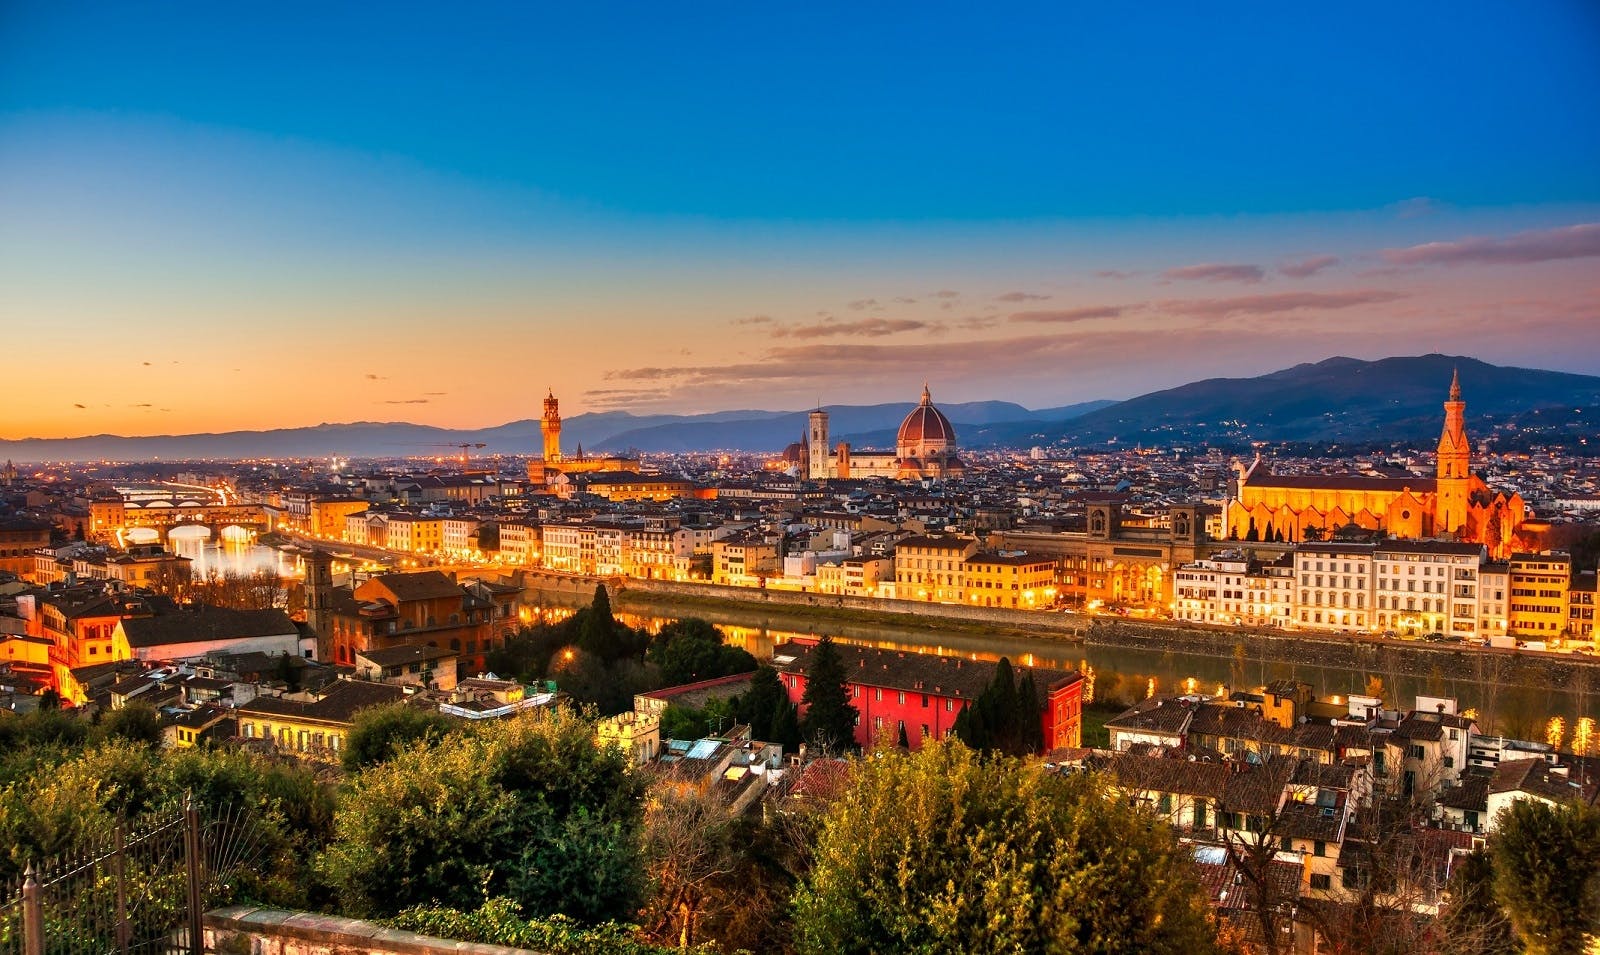 E-Bike-Nachttour durch Florenz mit atemberaubender Aussicht vom Piazzale Michelangelo